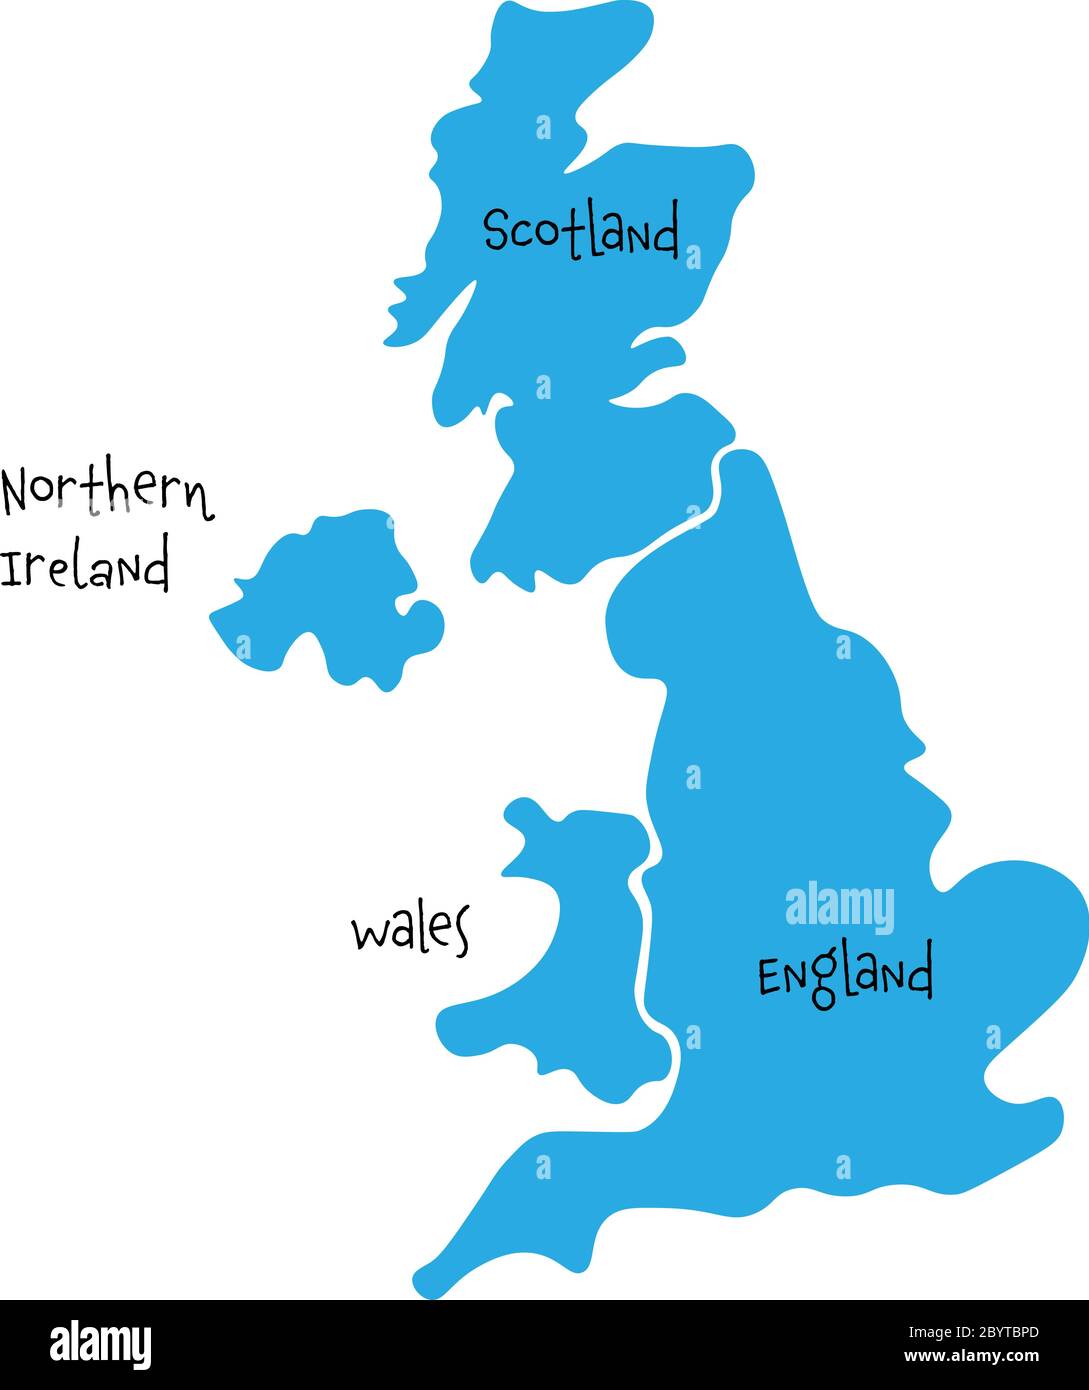 Regno Unito, alias Regno Unito, della Gran Bretagna e dell'Irlanda del Nord ha tracciato una mappa vuota disegnata a mano. Diviso in quattro paesi: Inghilterra, Galles, Scozia e NI. Semplice illustrazione vettoriale piatta. Illustrazione Vettoriale